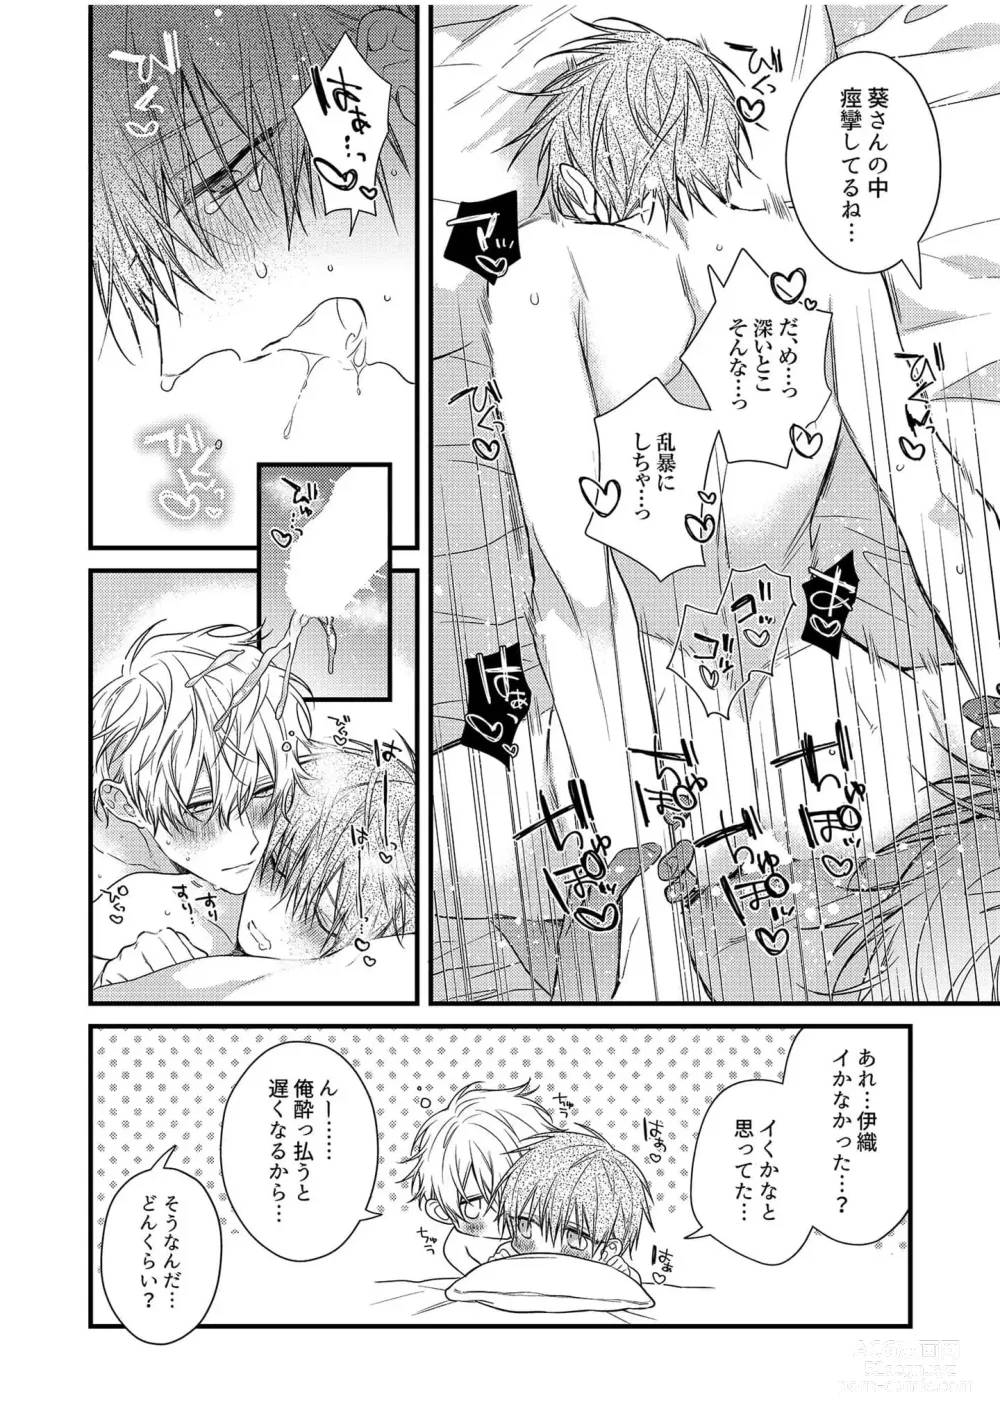 Page 208 of manga Ecchi wa shuu 7 Kibou Desu!